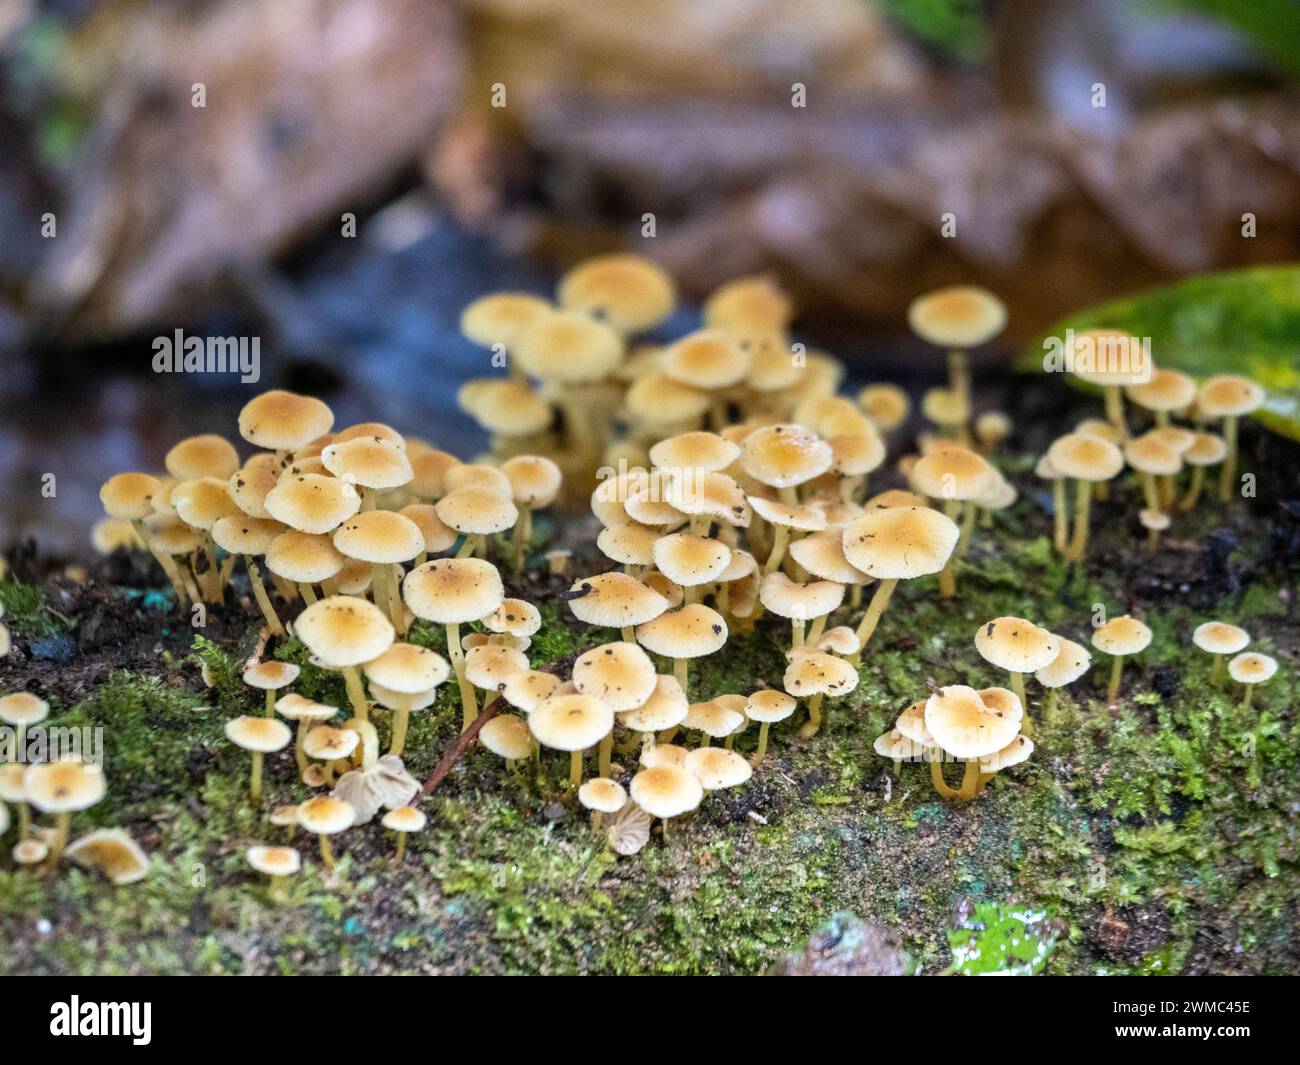 Mushrooms in the rainforest of Bwindi Impenetrable National Park, Uganda. Stock Photo